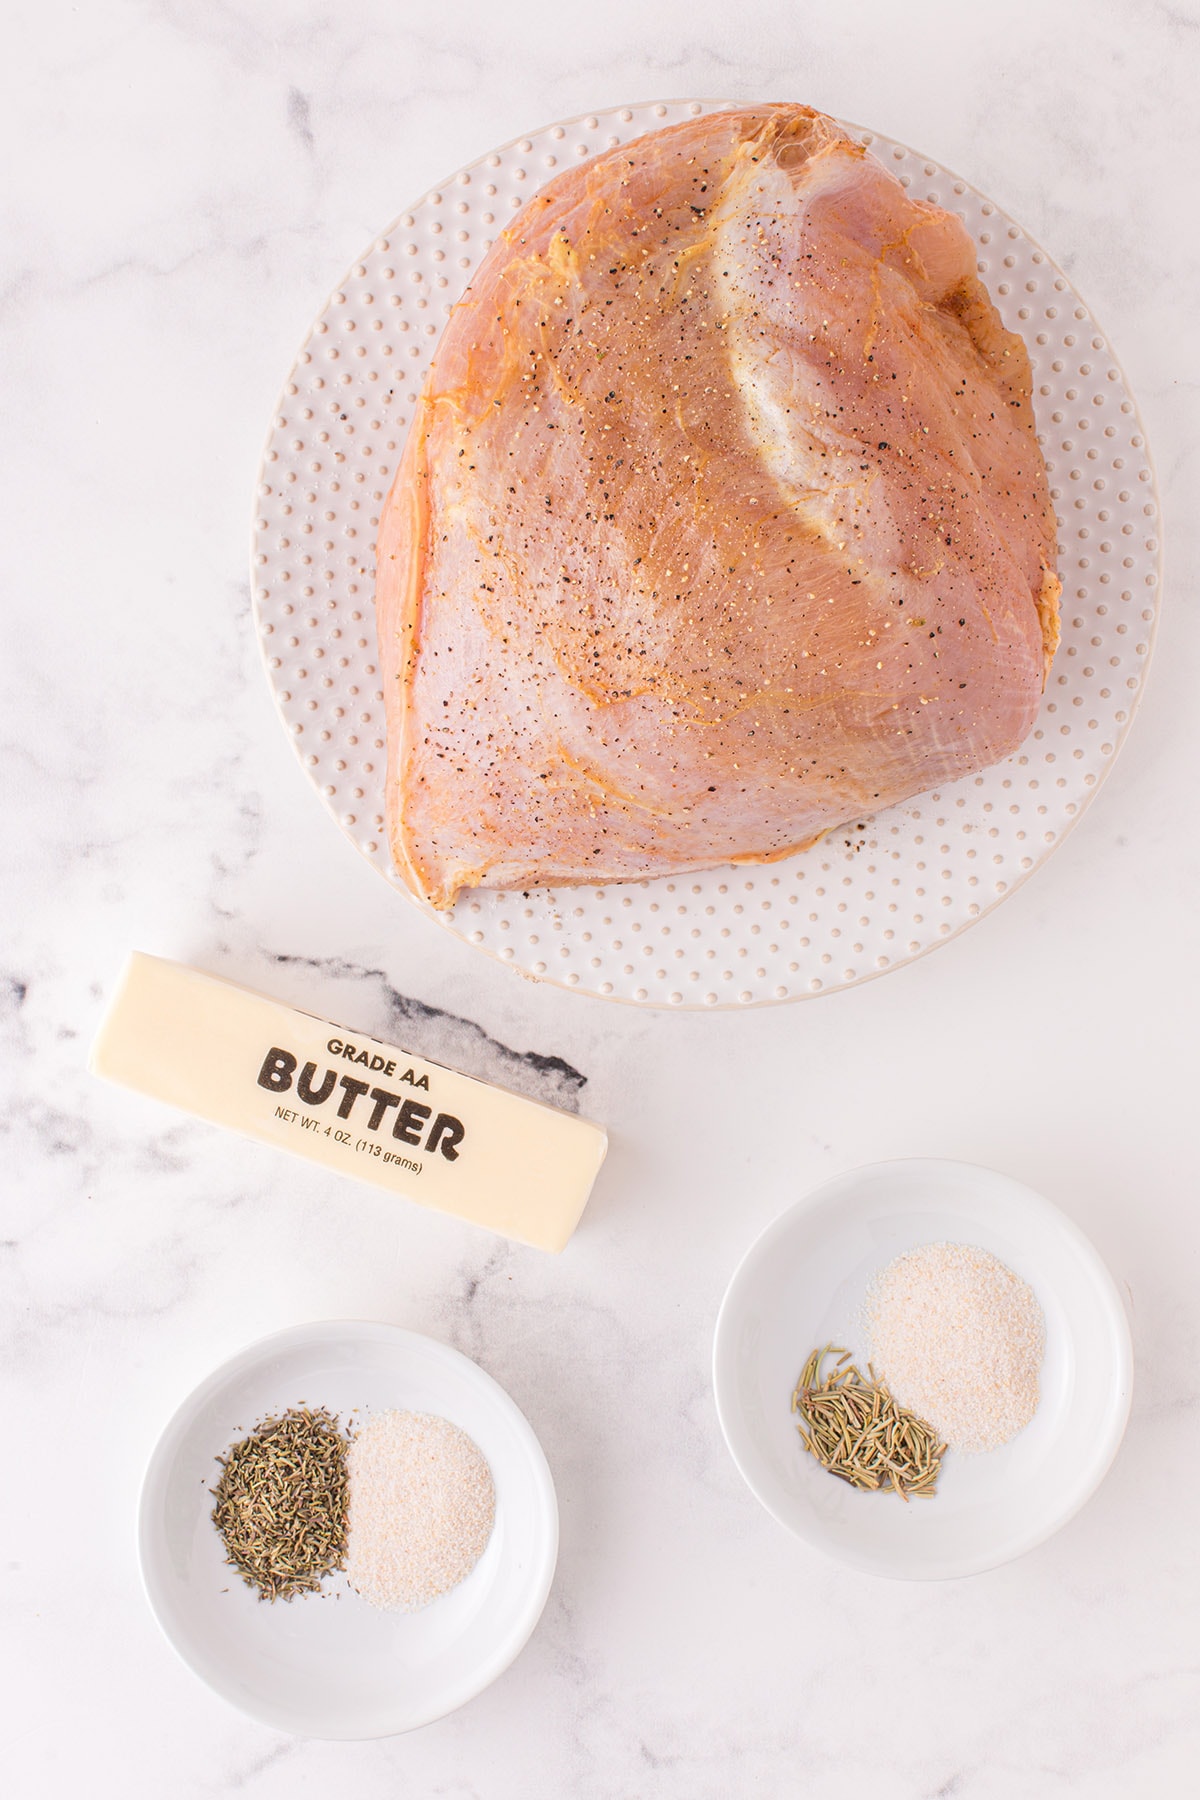 air fryer turkey breast ingredients